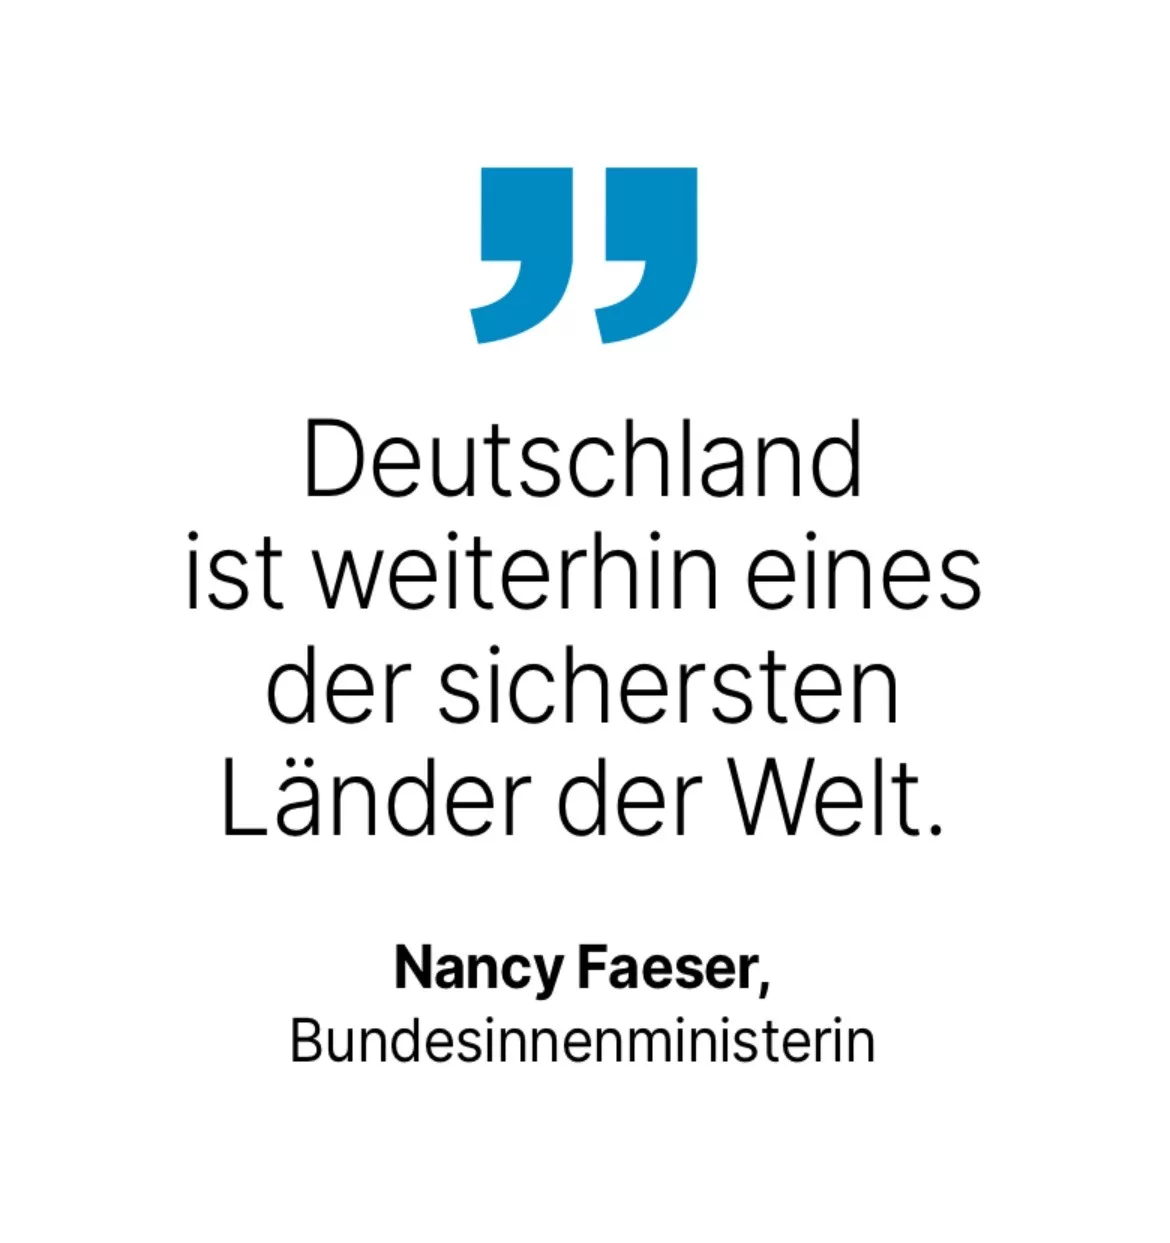 Nancy Faeser, Bundesinnenministerin: Deutschland ist weiterhin eines der sichersten Länder der Welt.